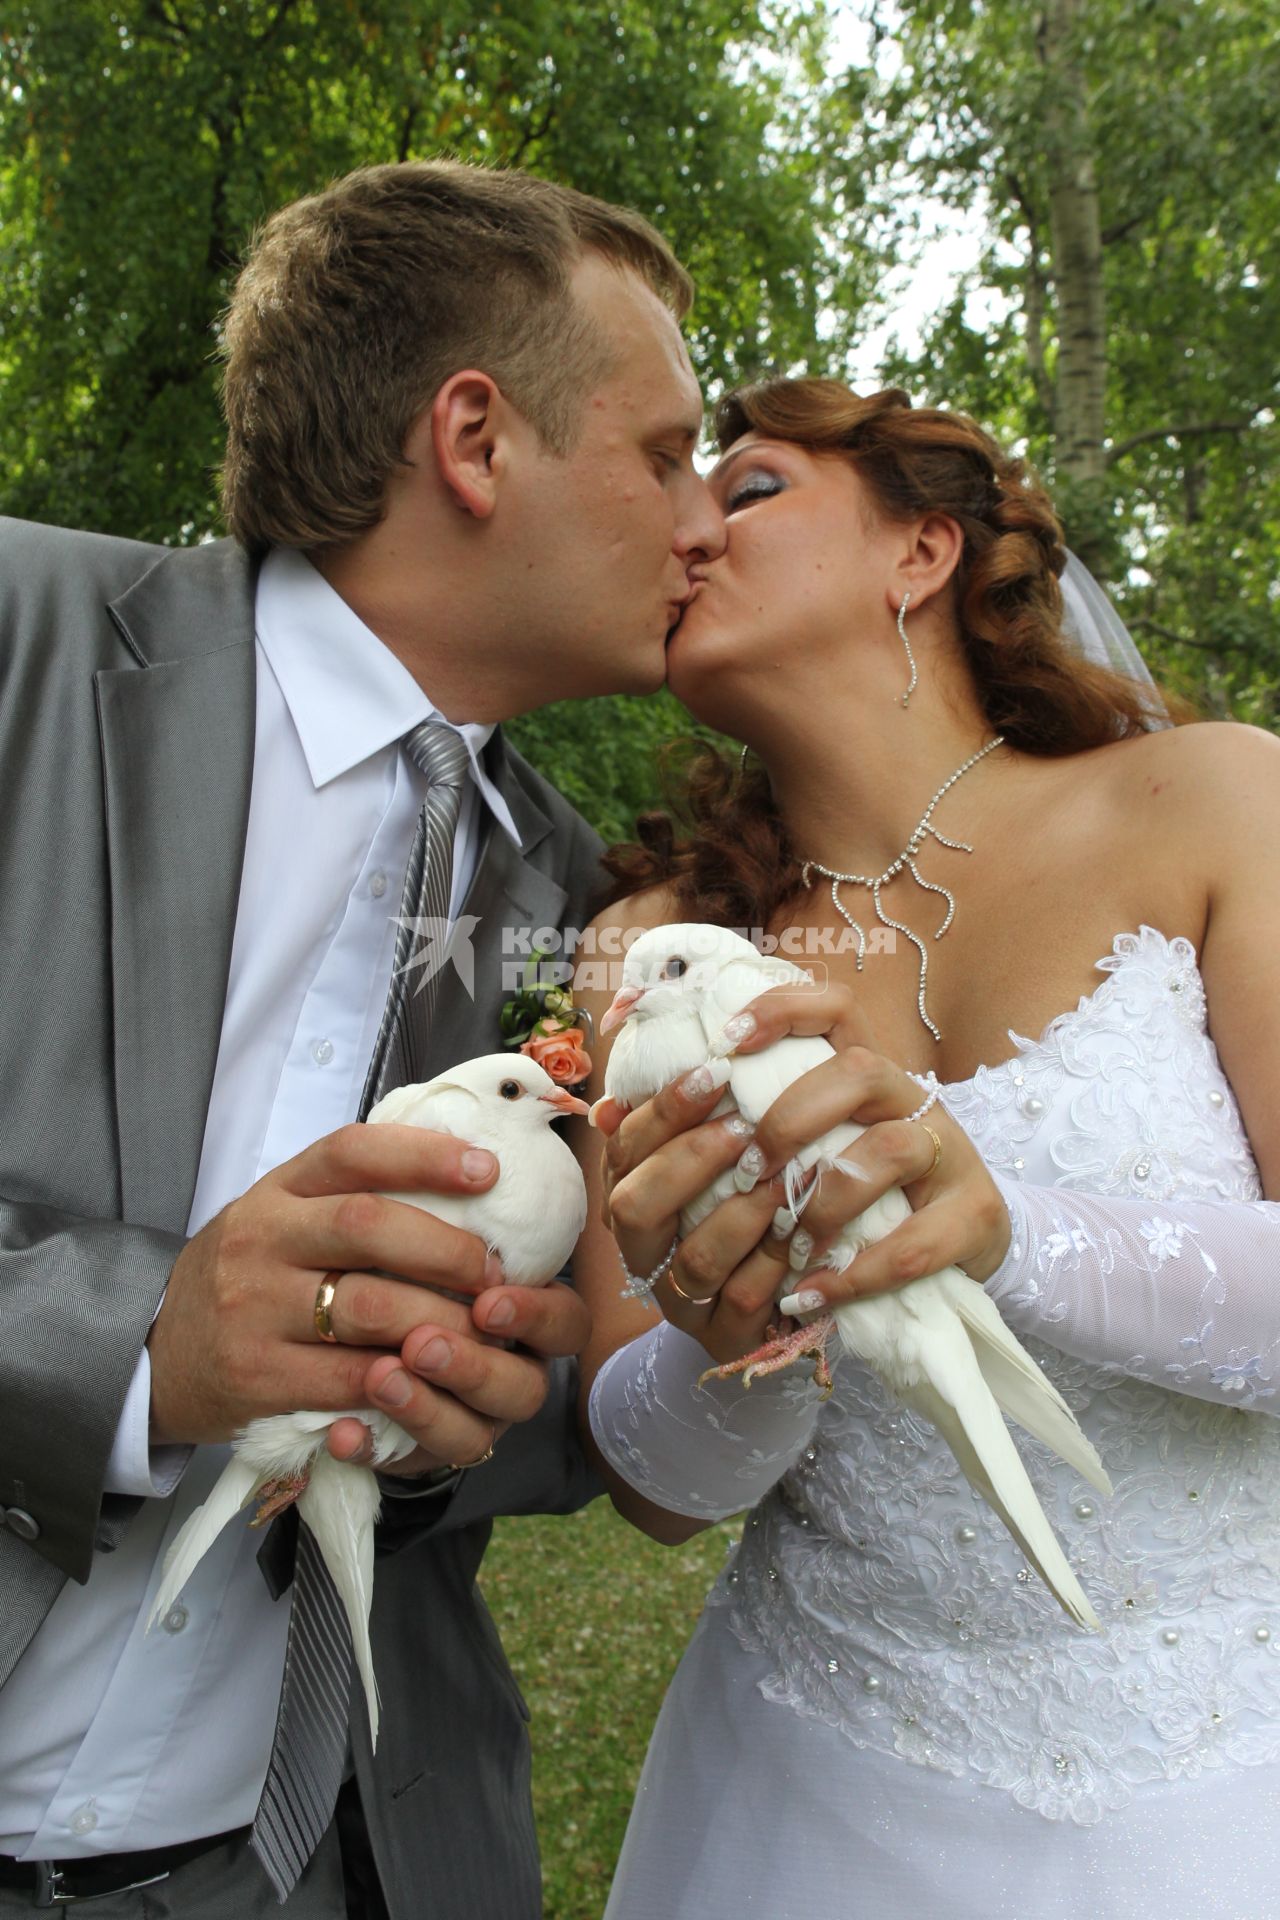 Дата: 26.06.2010, Время: 13:26. Молодая пара целуется держа в руках пару голубей.